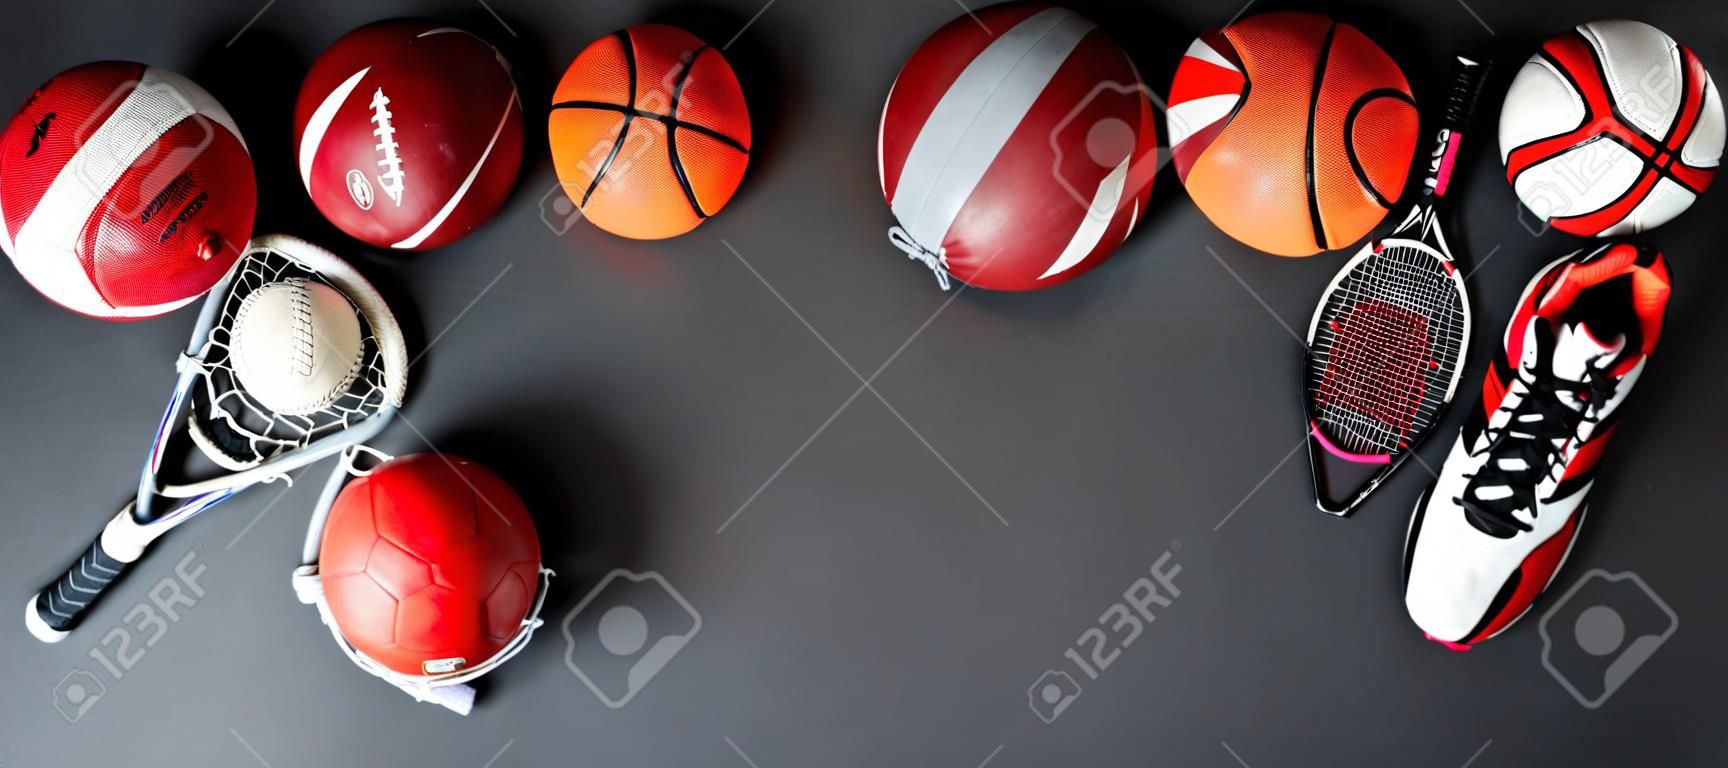 Vista panoramica di diversi palloni sportivi e attrezzature su superficie nera